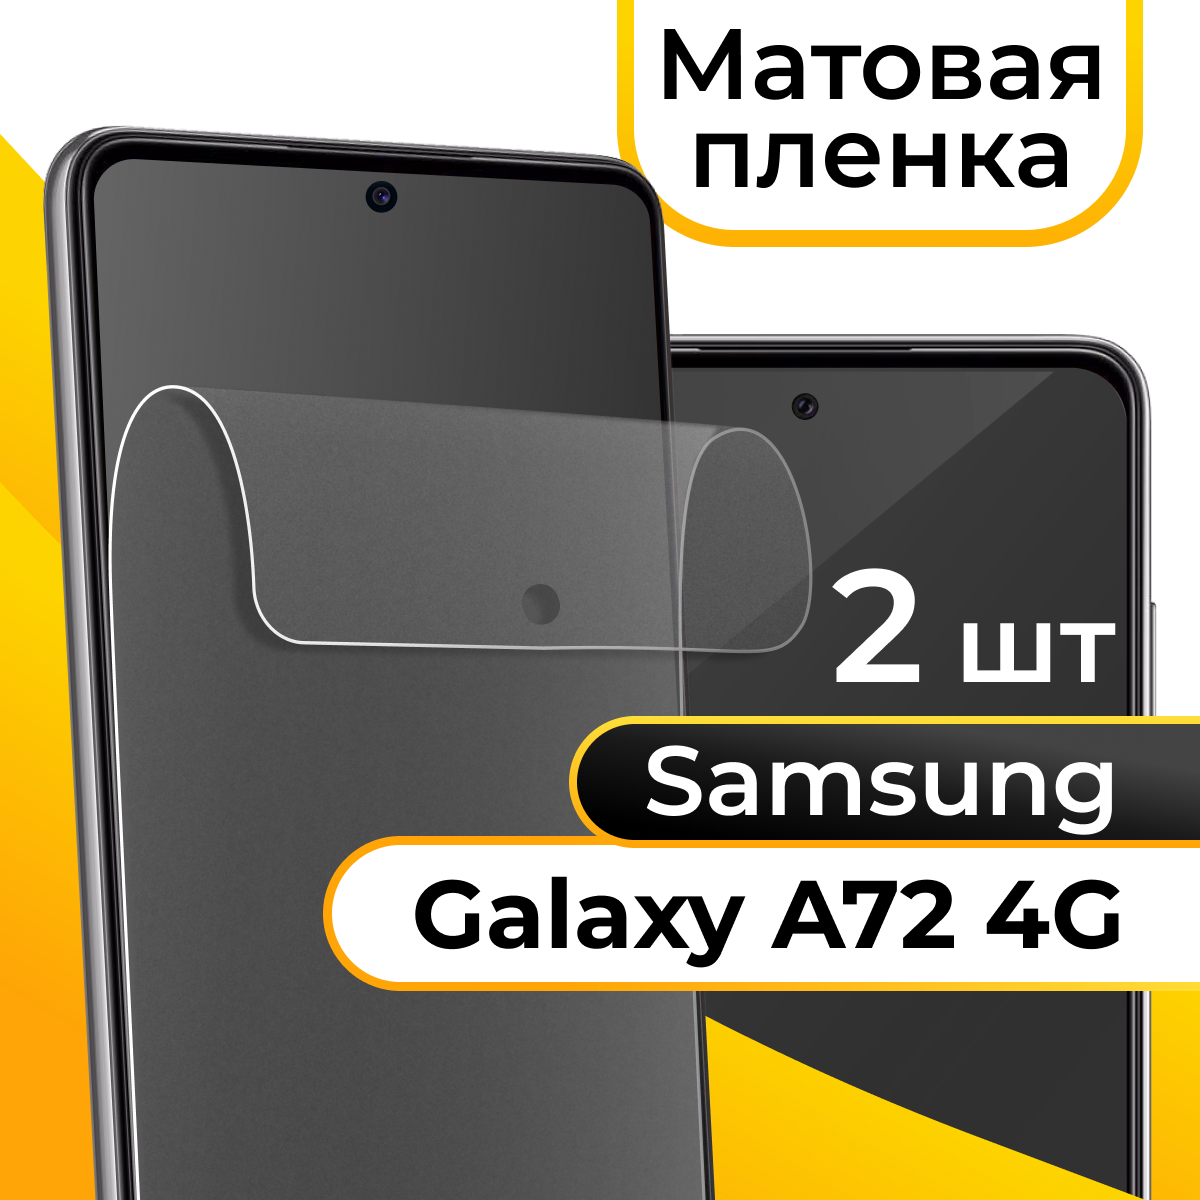 Комплект 2 шт. Матовая пленка для смартфона Samsung Galaxy A72 4G / Защитная противоударная пленка на телефон Самсунг Галакси А72 4Г / Гидрогелевая пленка